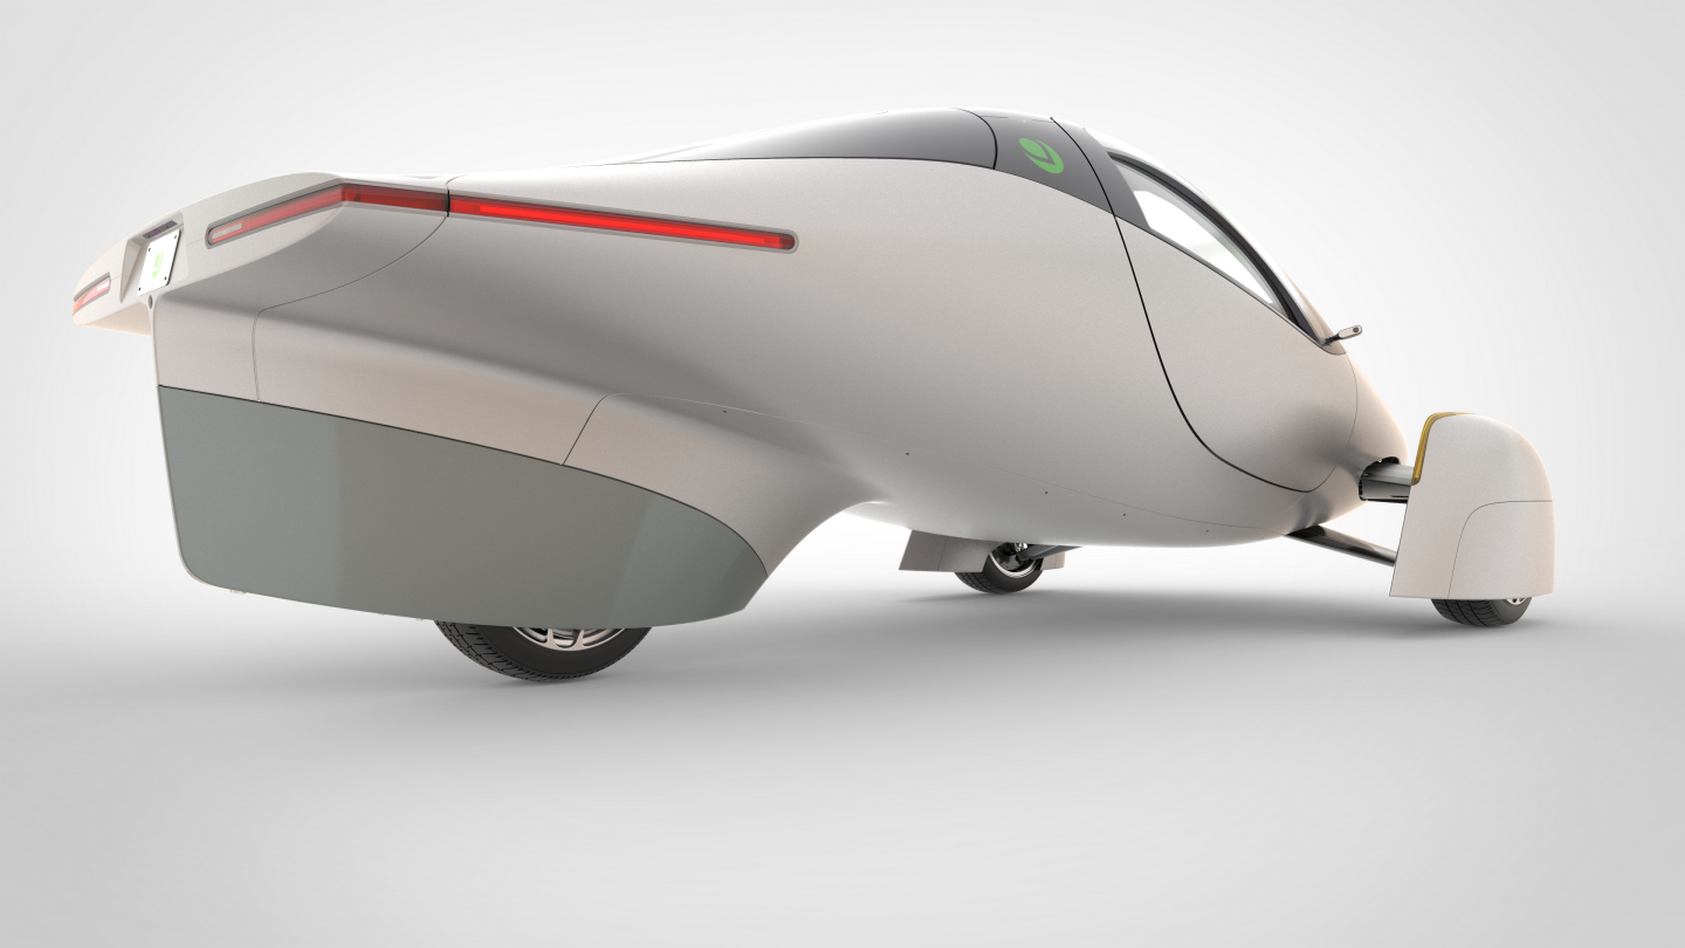 L’Aptera ressemble plus à un vaisseau spatial qu’à une voiture. Et ça lui va bien ! © Aptera Motors